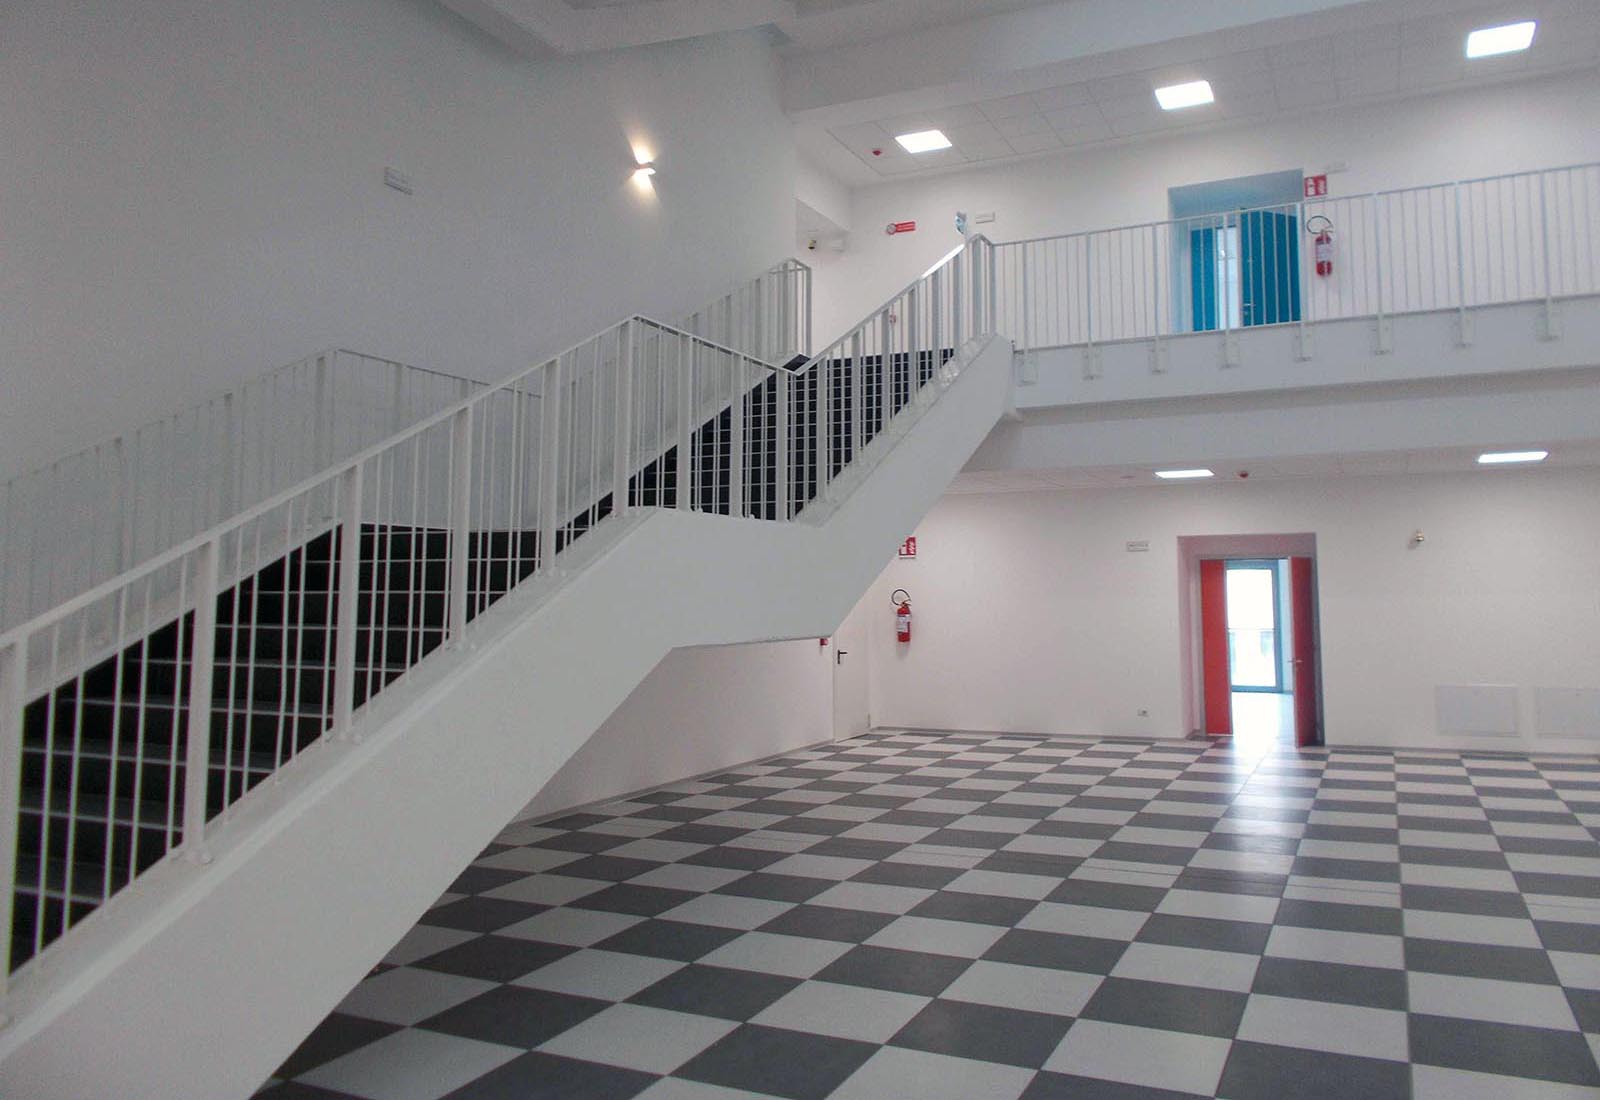 Primary school in Gravedona - The hall